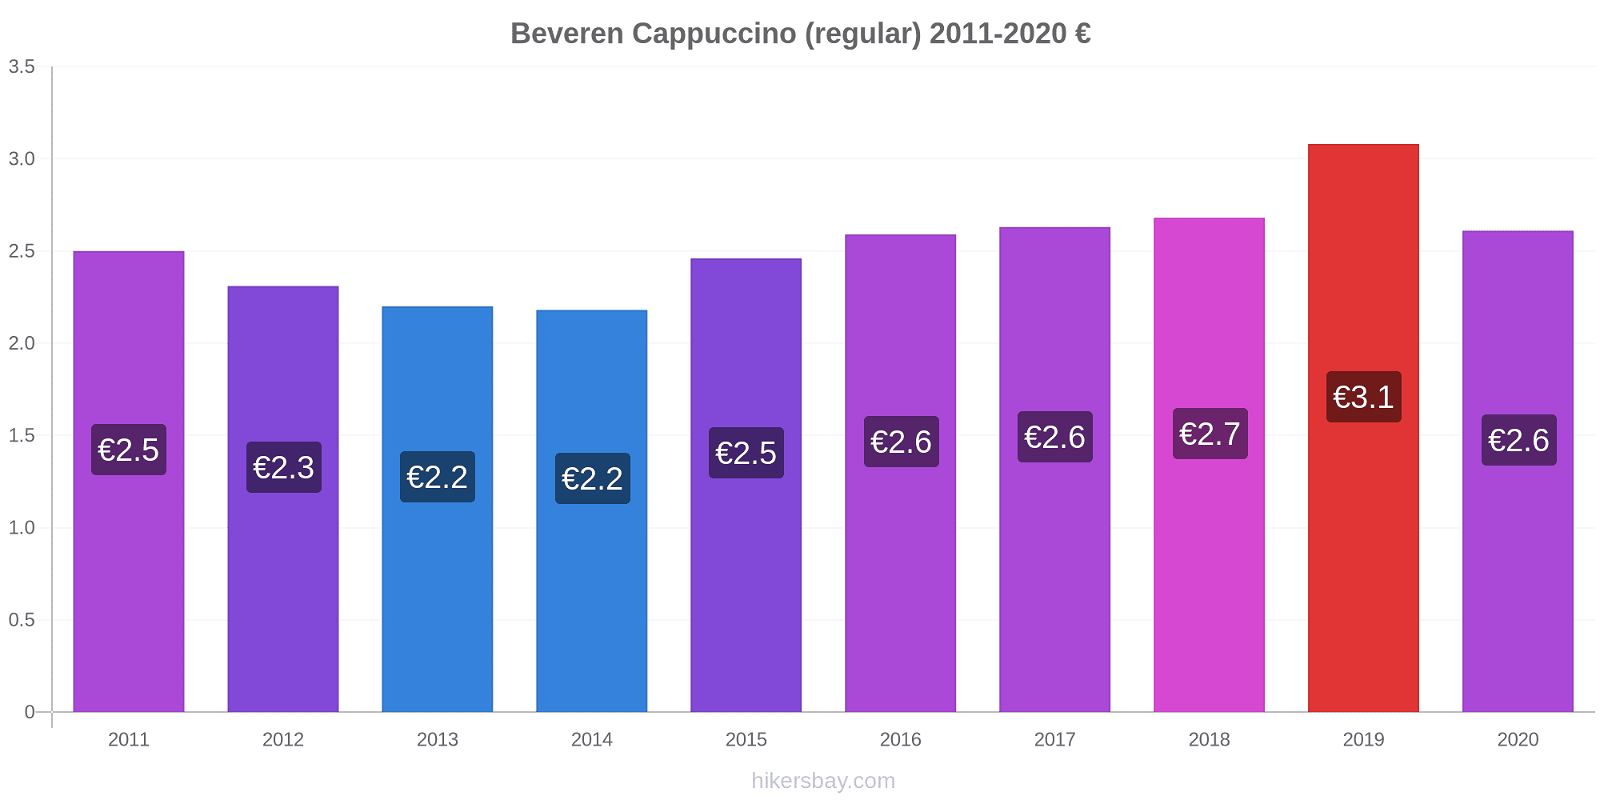 Beveren price changes Cappuccino (regular) hikersbay.com